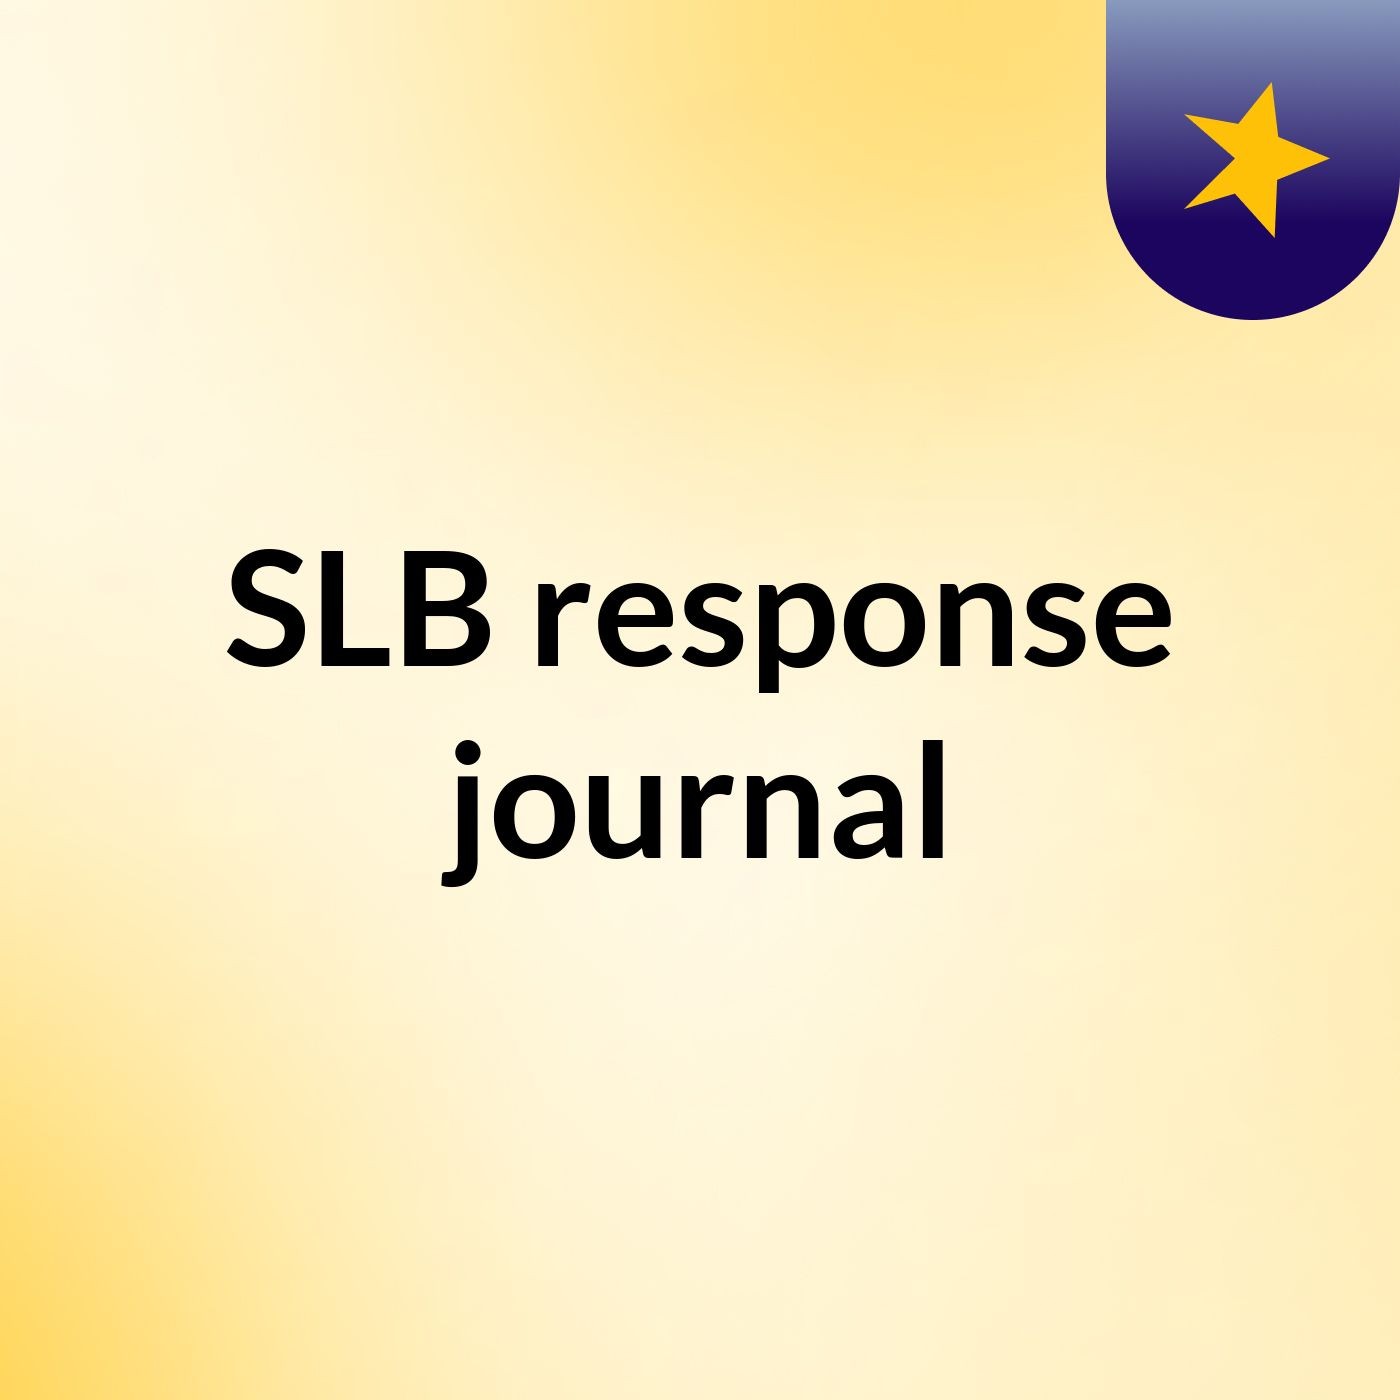 Episode 6- SLB response journal